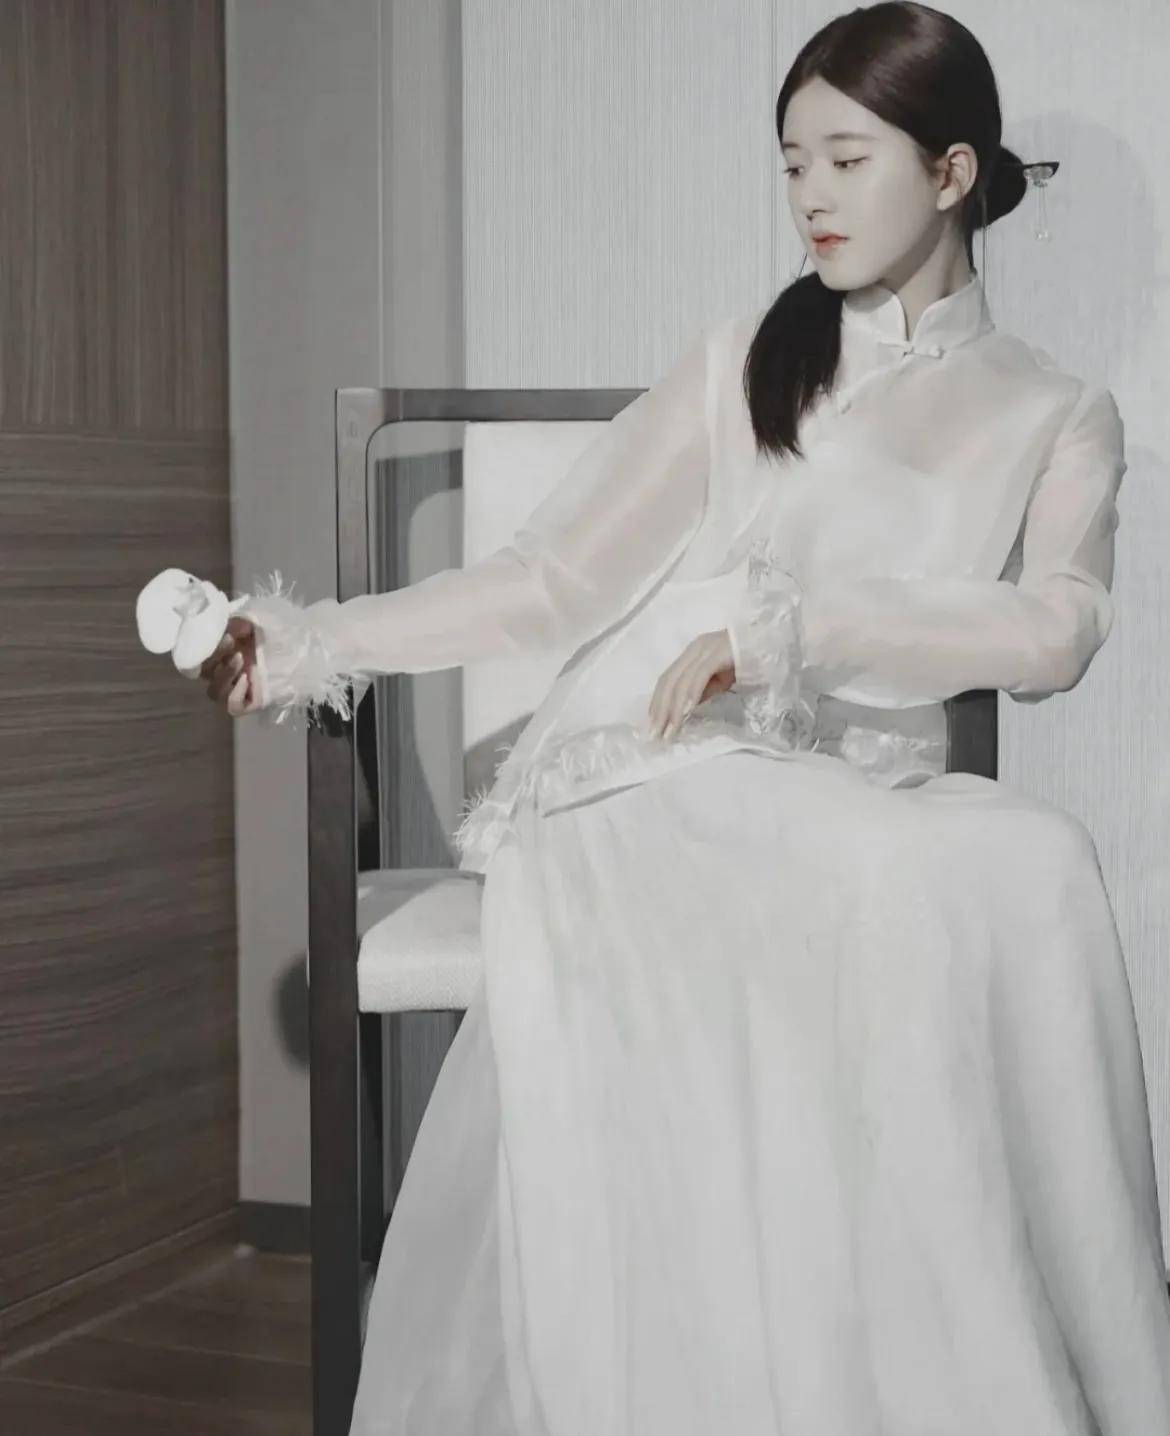 赵露思的民国国风旗袍造型,简直美的清新脱俗